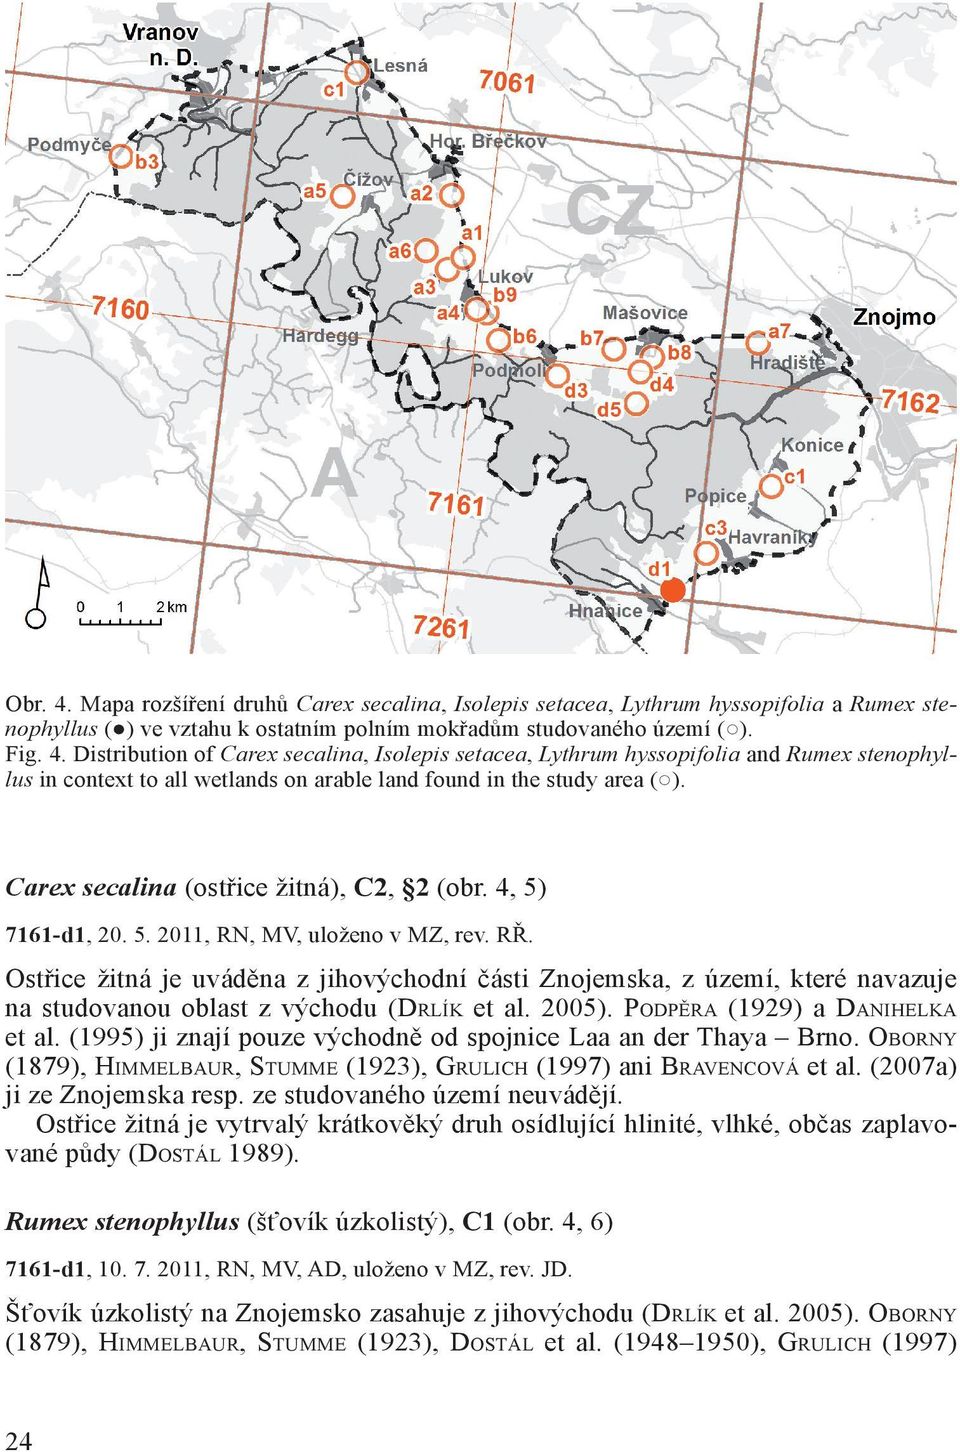 Ostřice žitná je uváděna z jihovýchodní části Znojemska, z území, které navazuje na studovanou oblast z východu (Drlík et al. 2005). Podpěra (1929) a Danihelka et al.